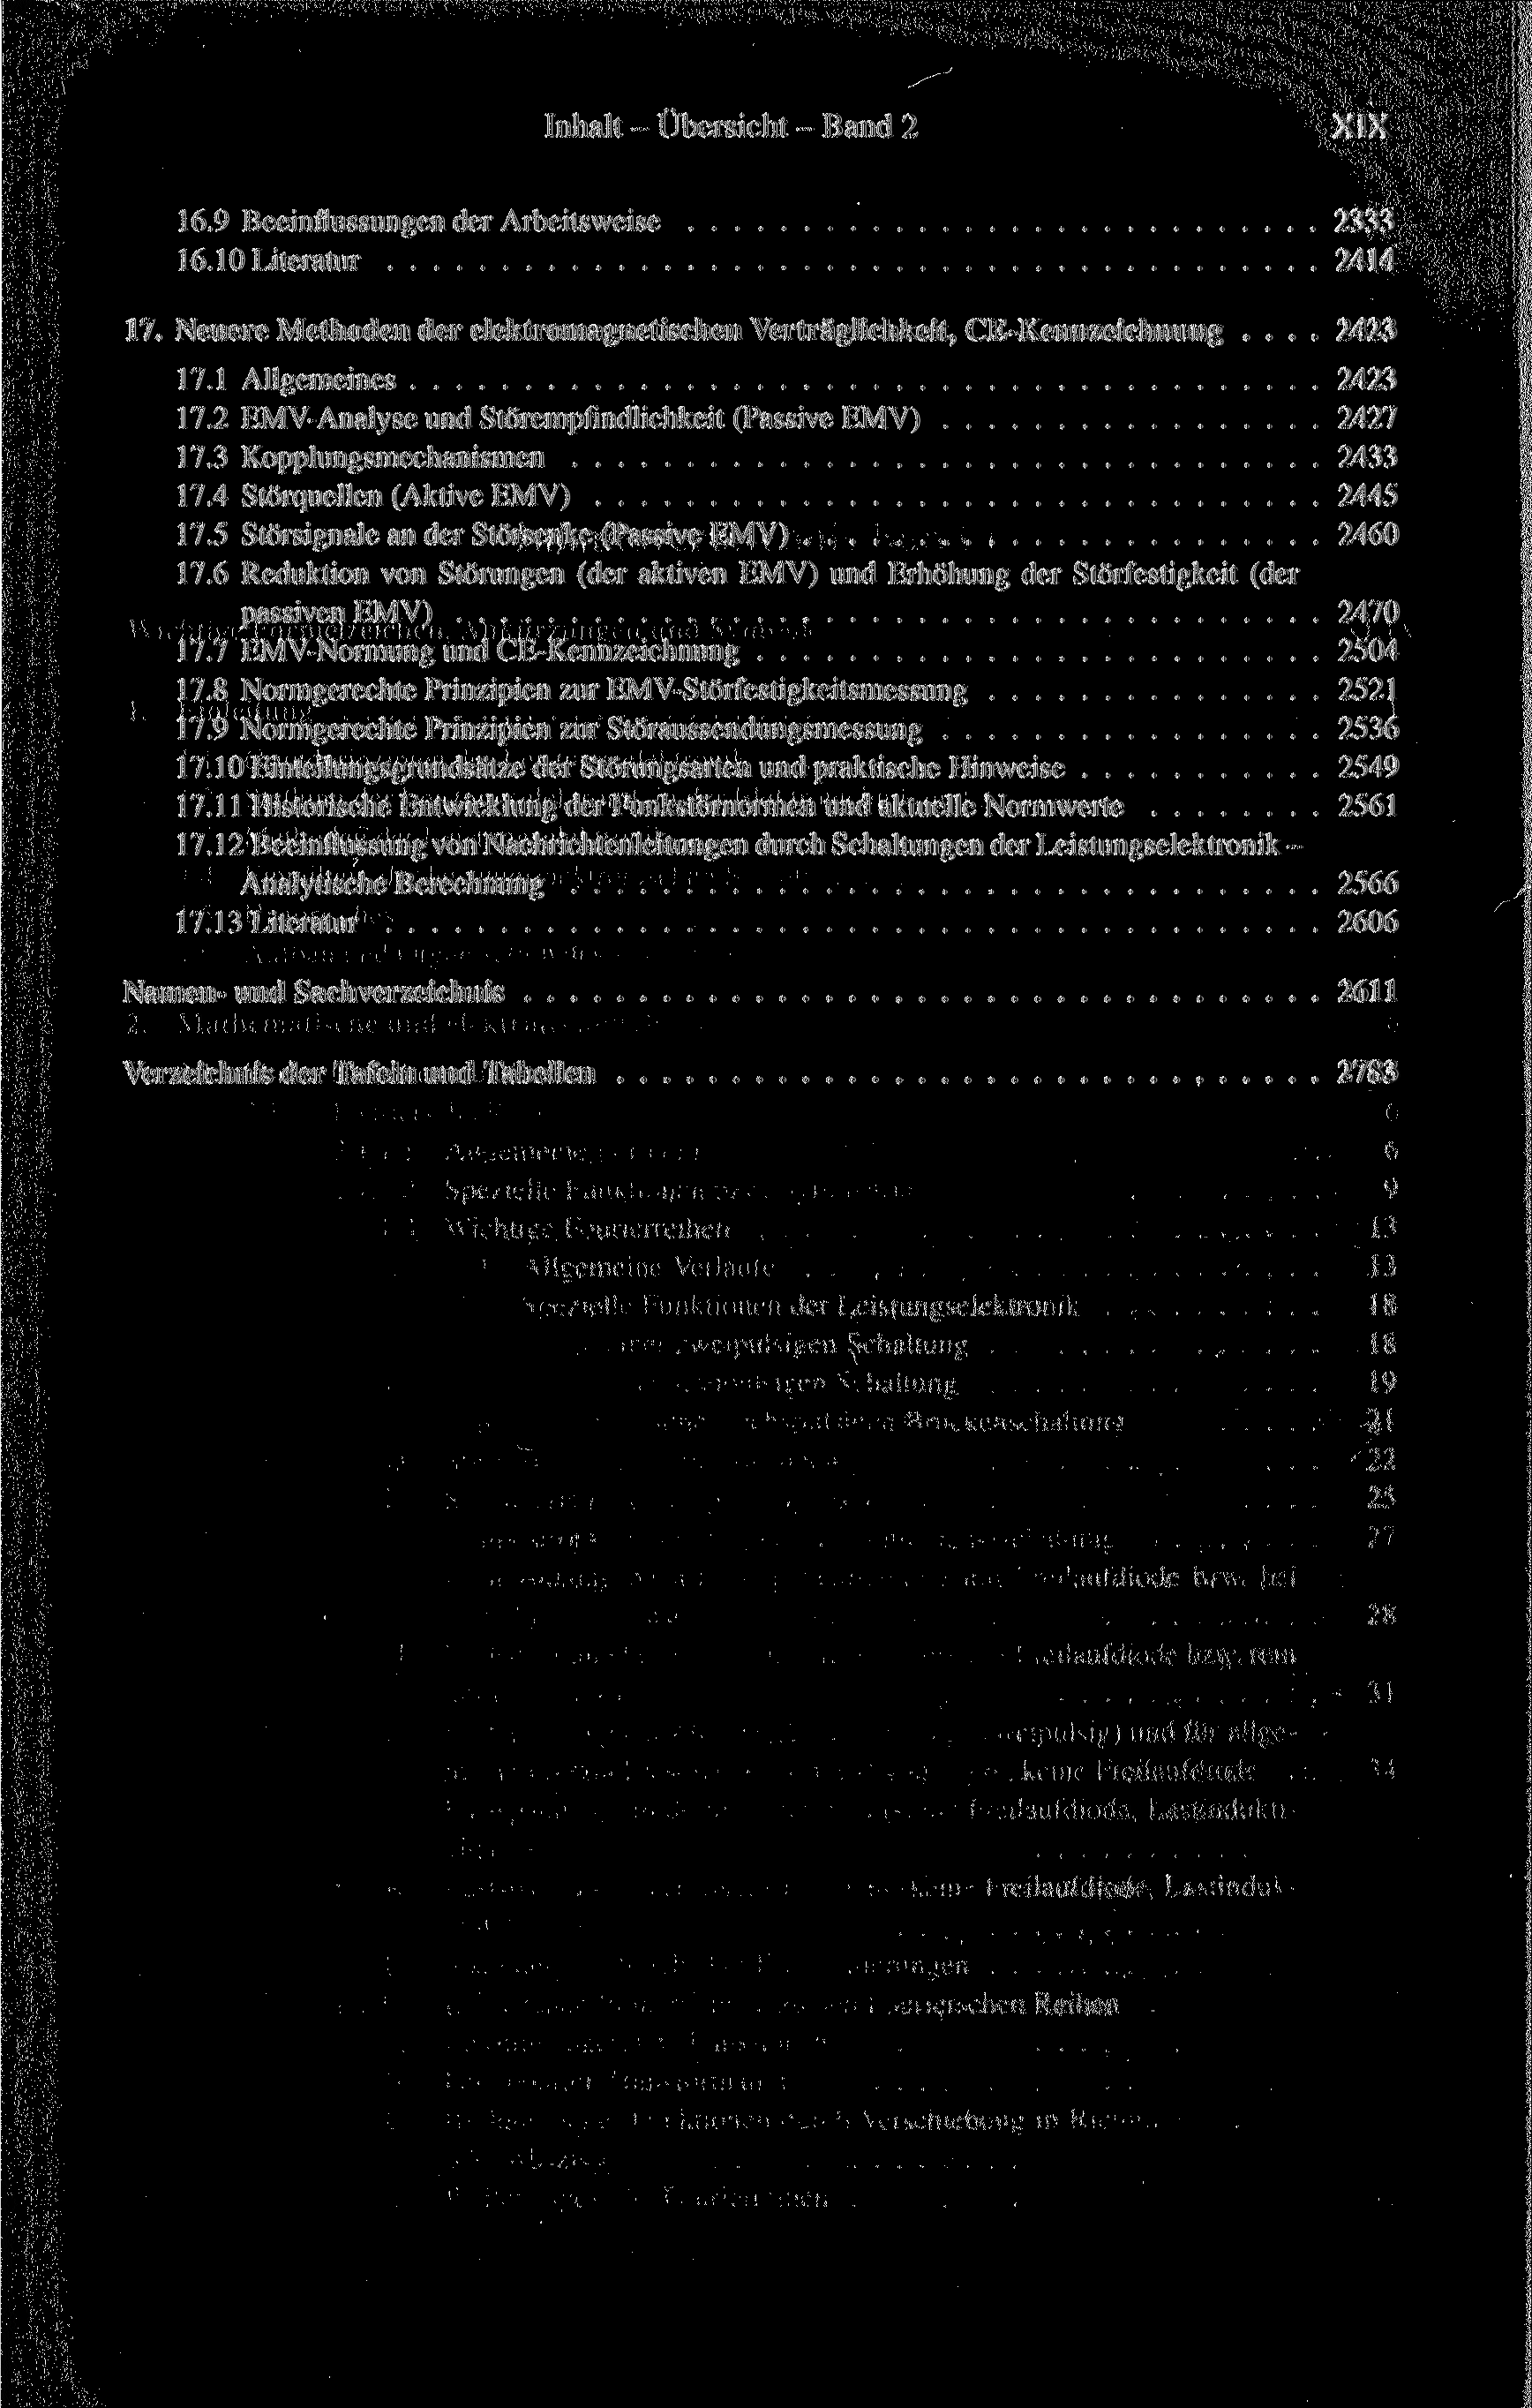 Inhalt - Übersicht - Band 2 XIX 16.9 Beeinflussungen der Arbeitsweise 2333 16.10 Literatur 2414 17. Neuere Methoden der elektromagnetischen Verträglichkeit, CE-Kennzeichnung... 2423 17.